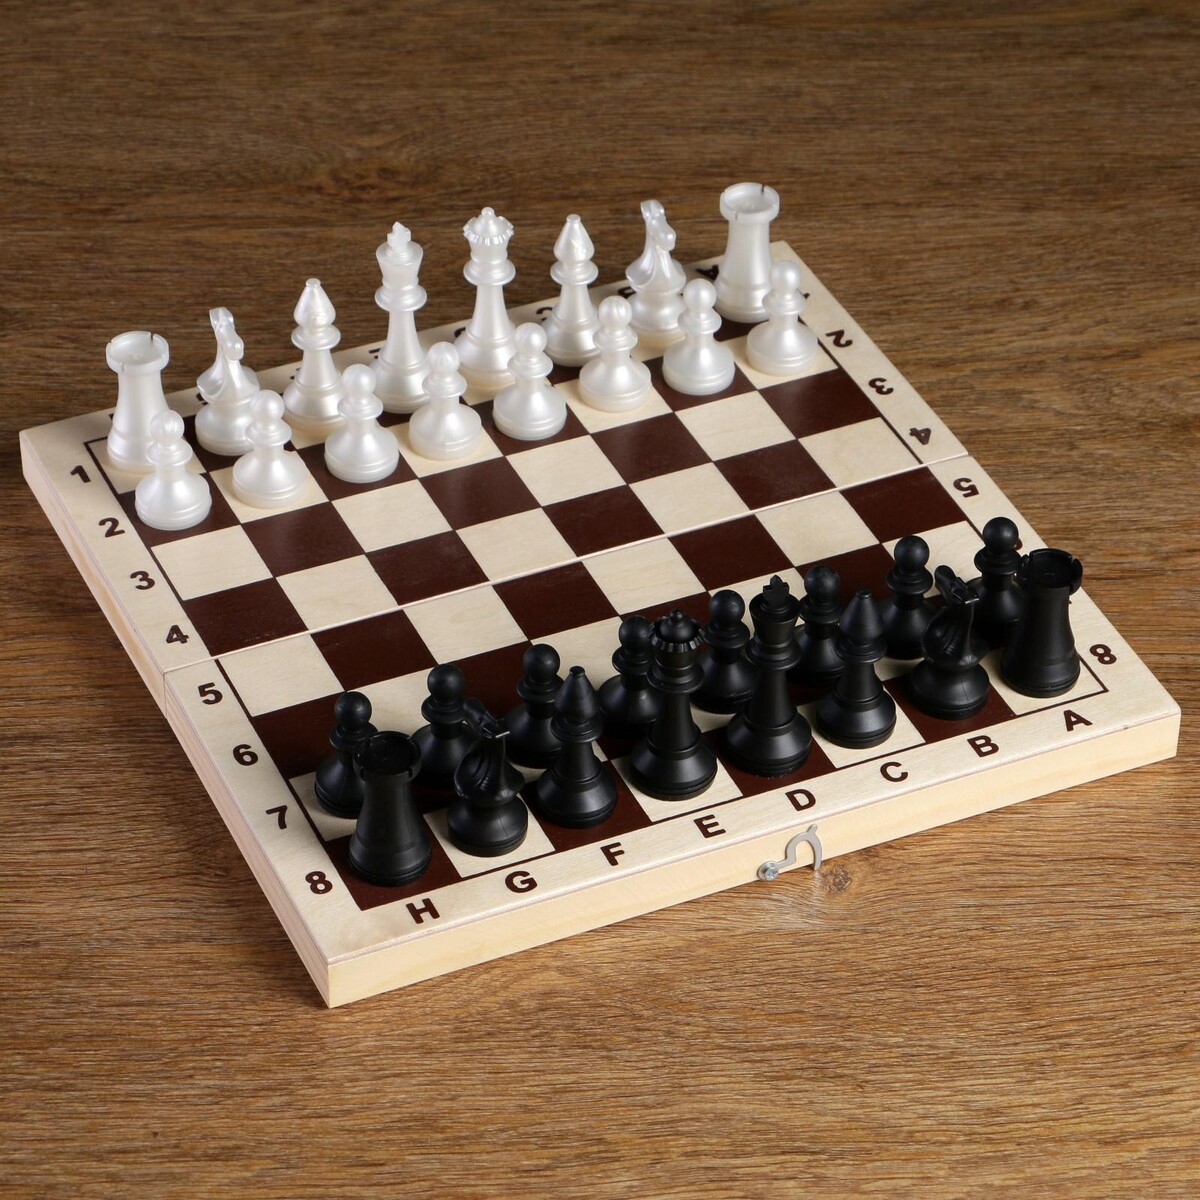 Шахматные фигуры обиходные, пластик, король h-7.2 см, пешка 4 см шахматные фигуры пластик король h 9 5 см пешка h 4 5 см